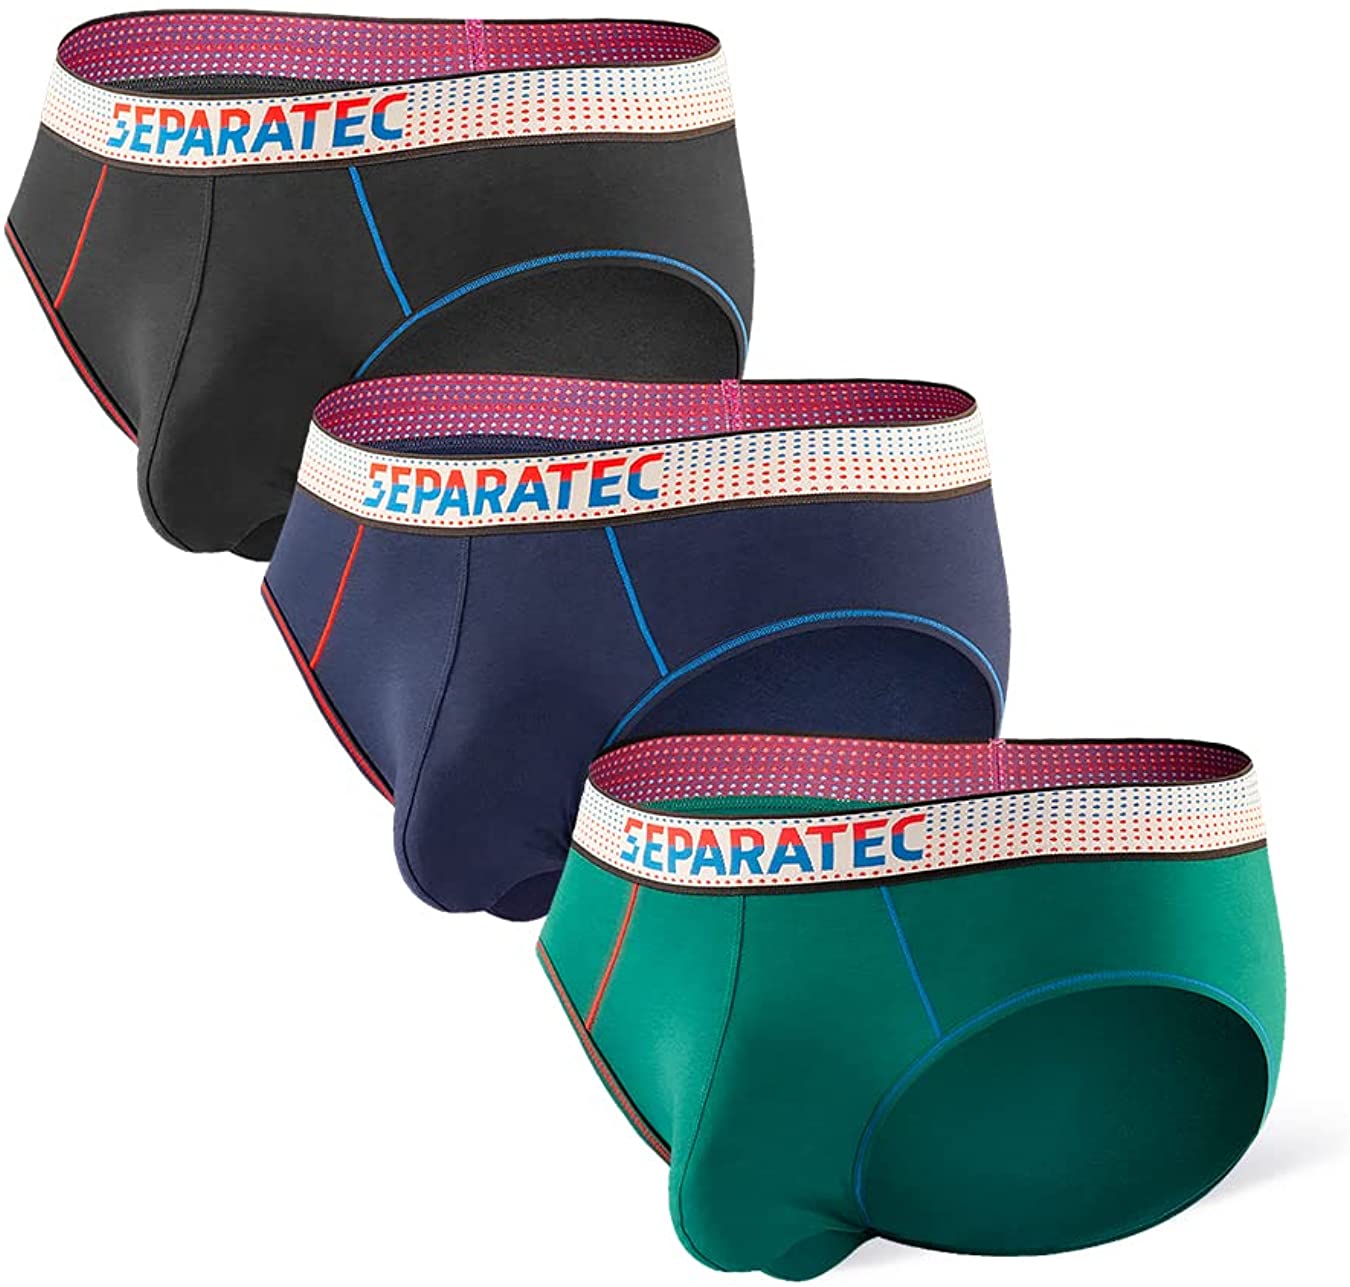 Separatec Men's Soft Cotton Modal Dual Pouch Underwear Bulge Enhancing ...